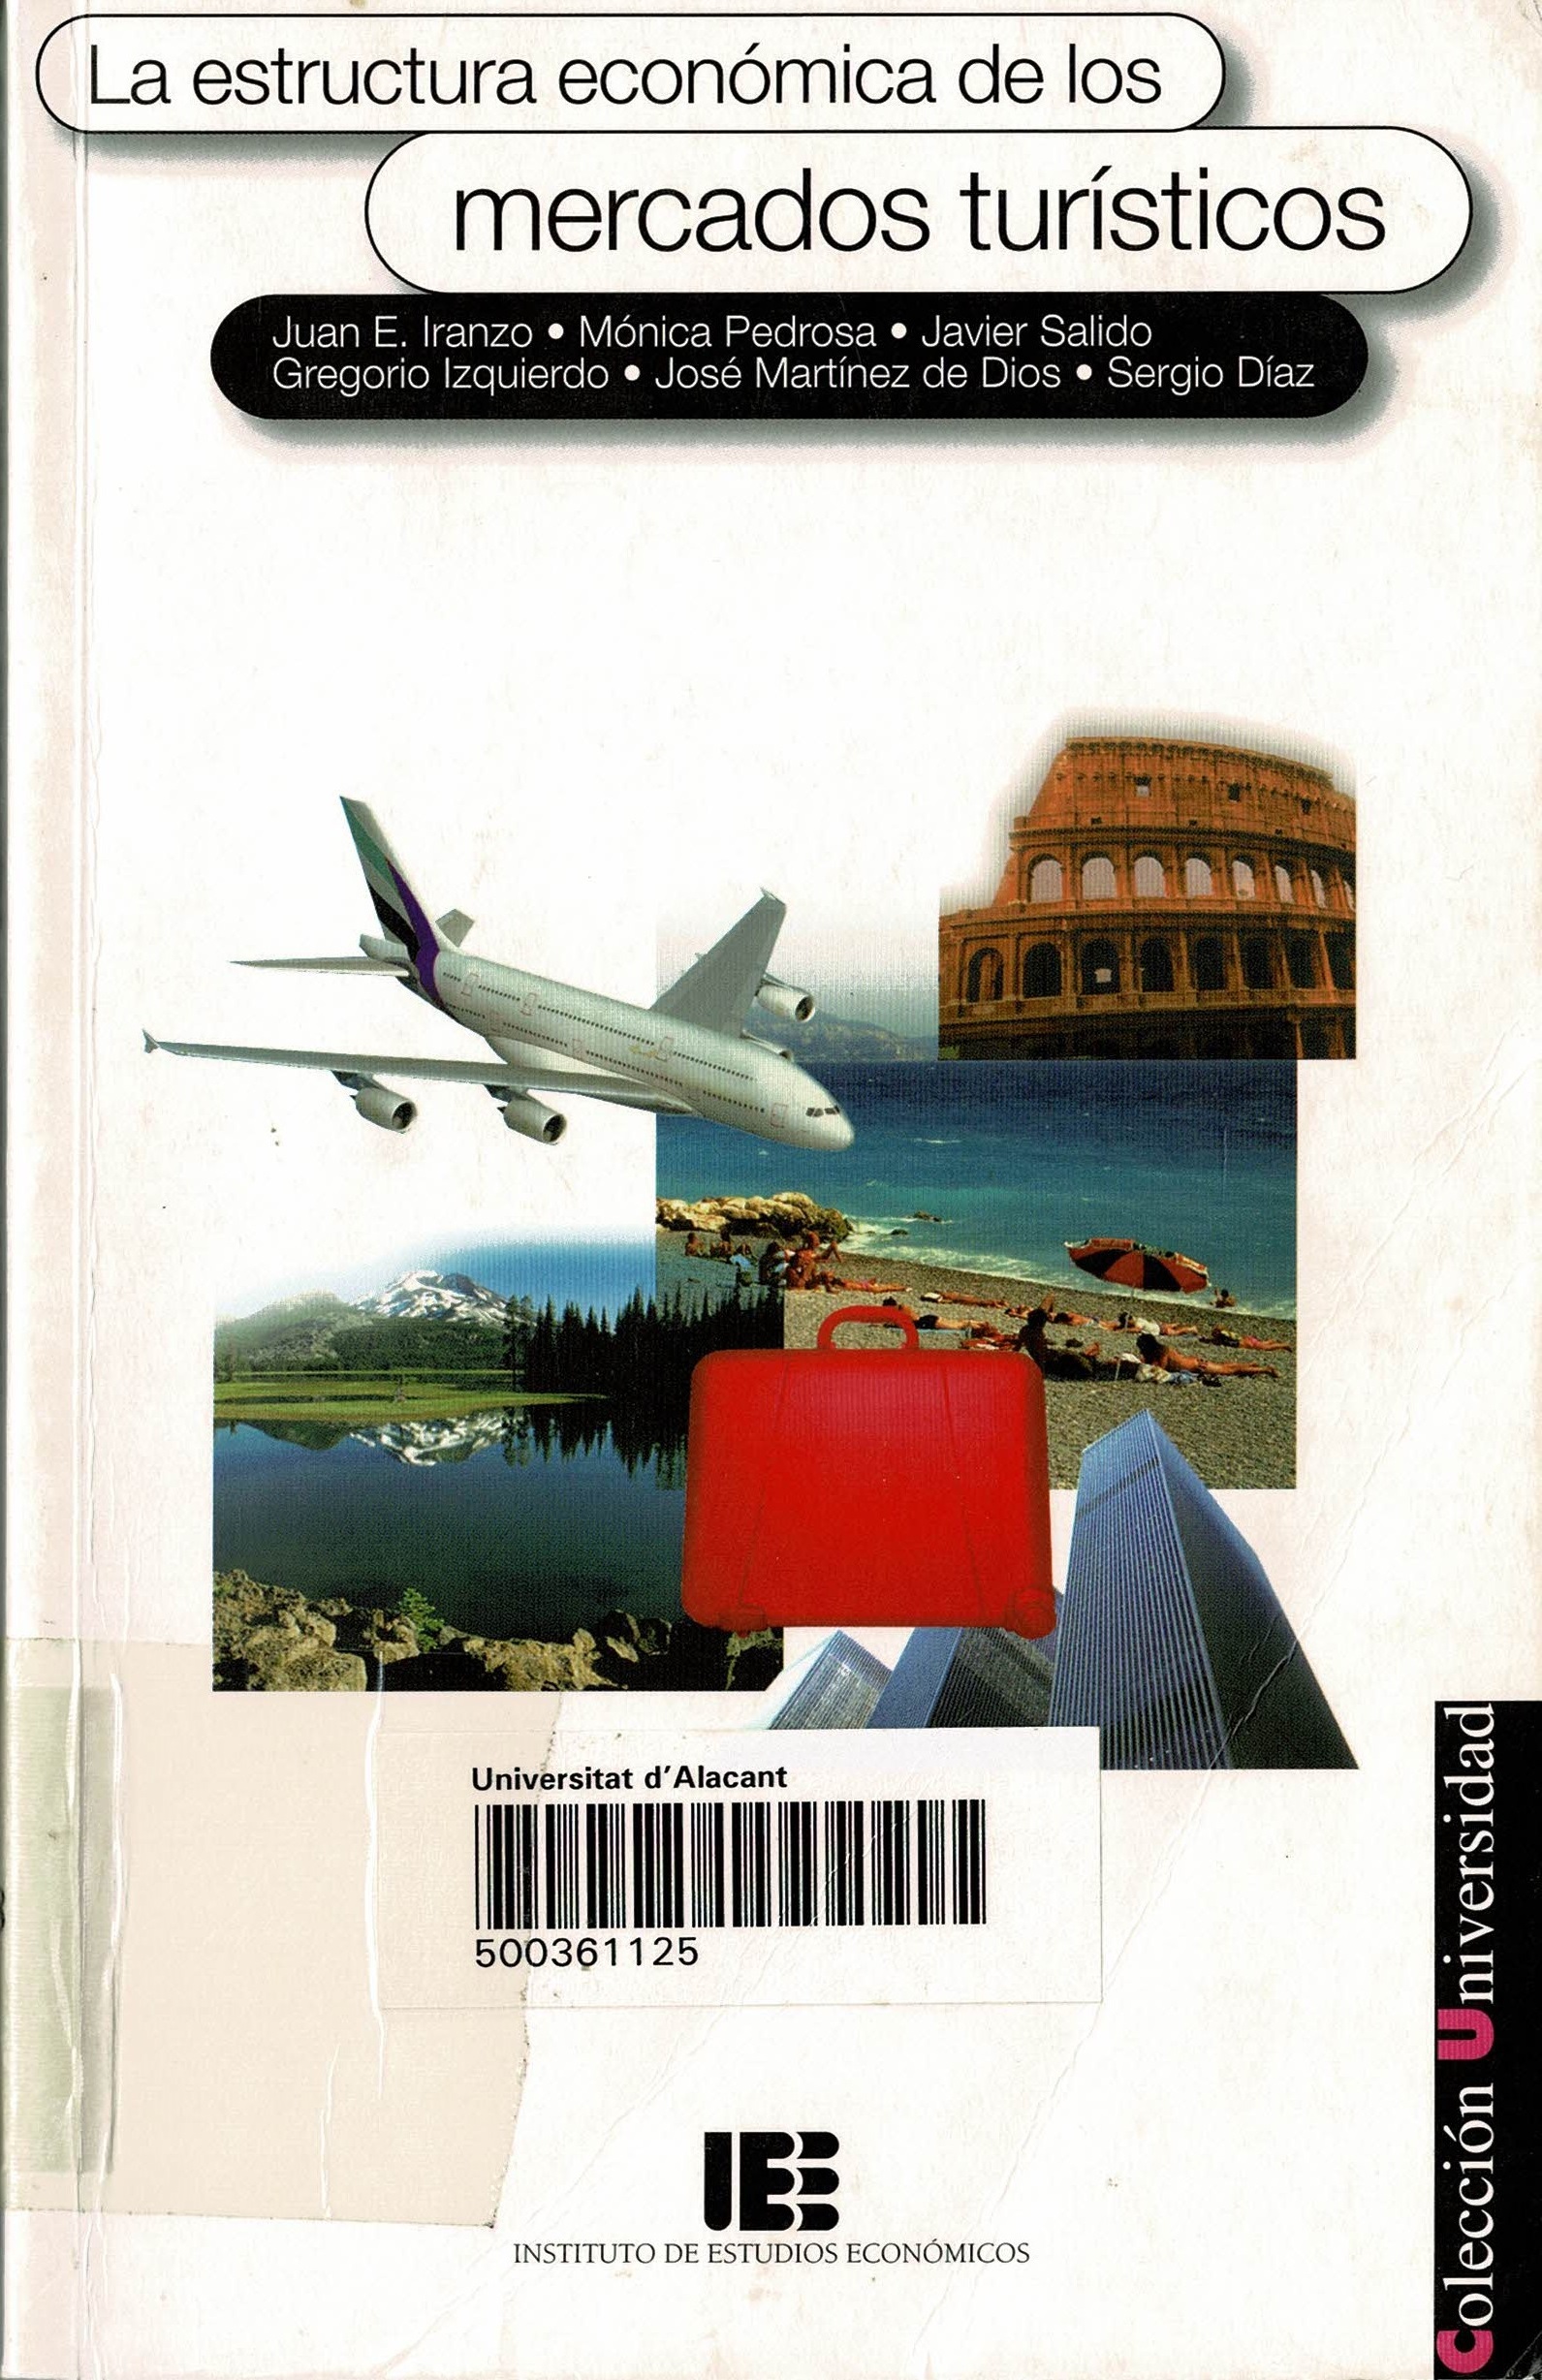 Imagen de portada del libro La estructura económica de los mercados turísticos